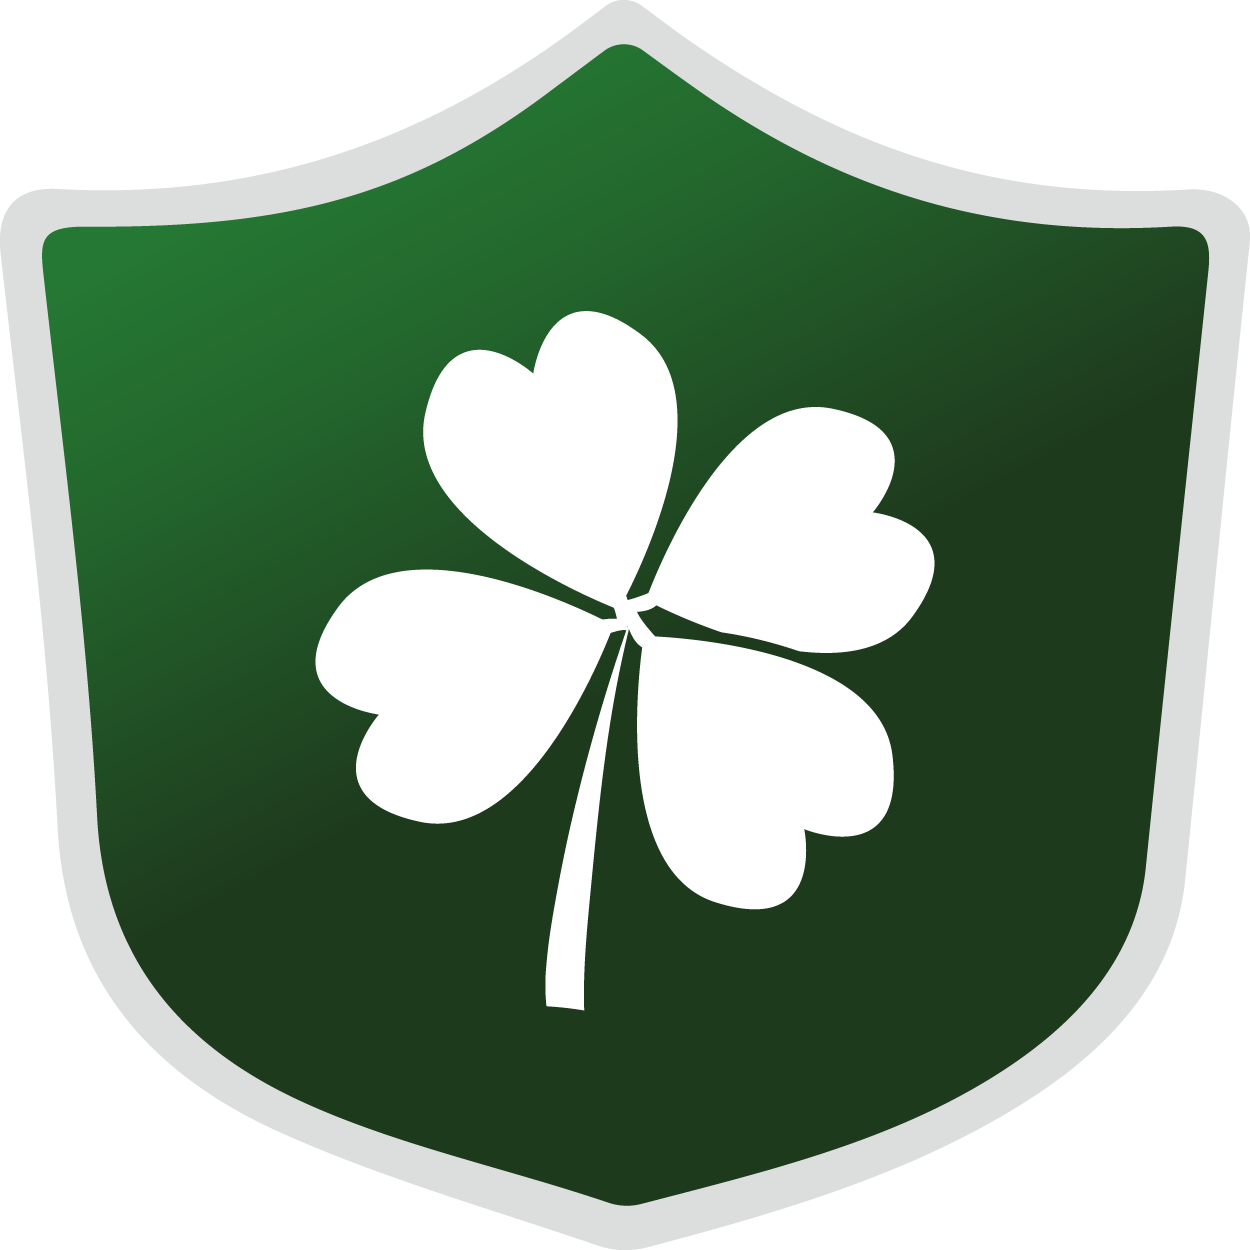 Trail Blazer badges: St Patrick's Day club